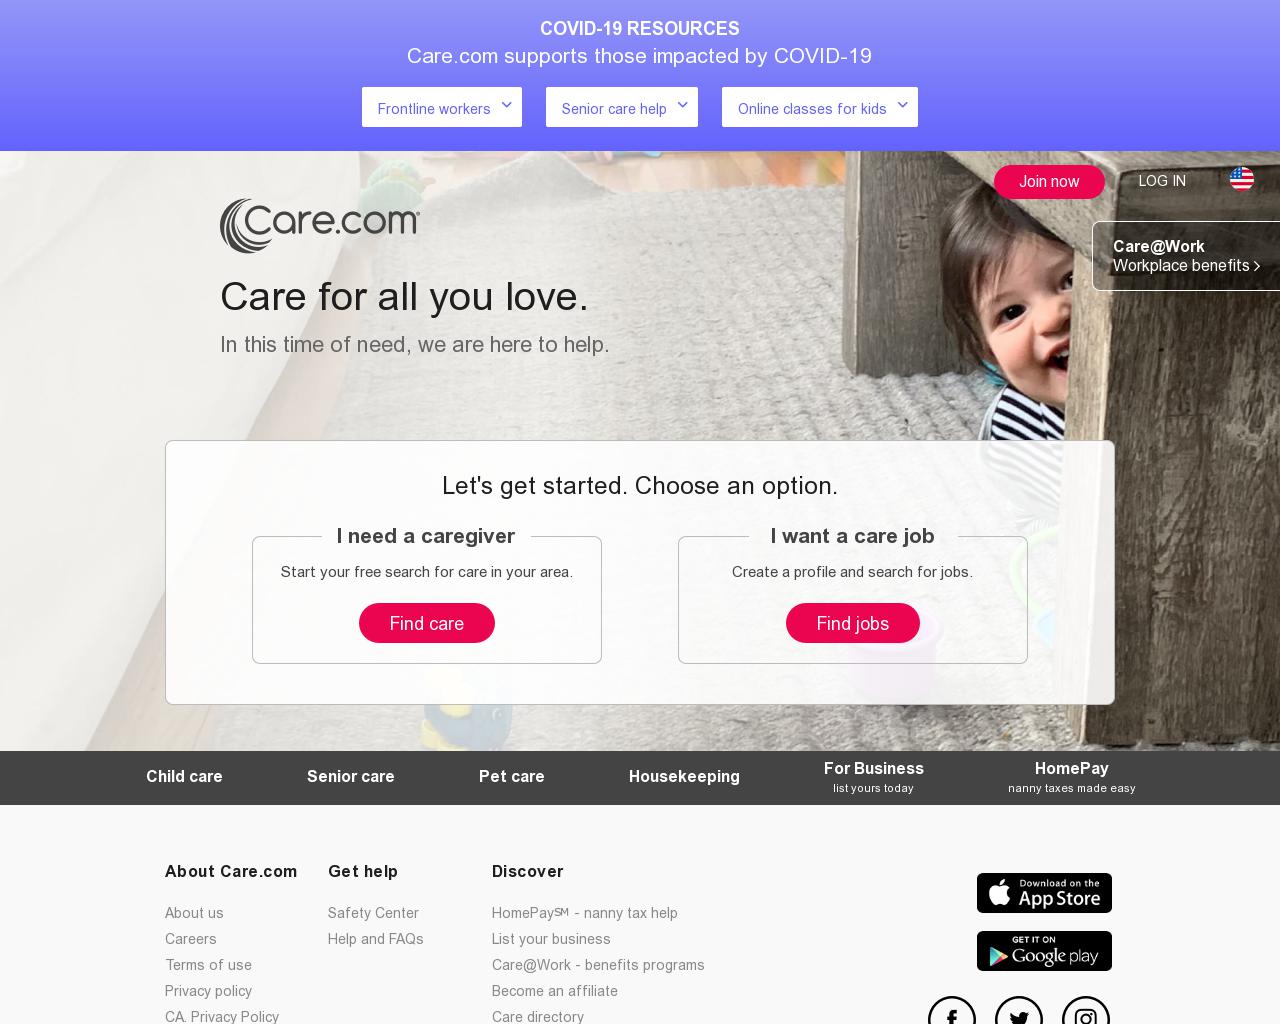 care.com